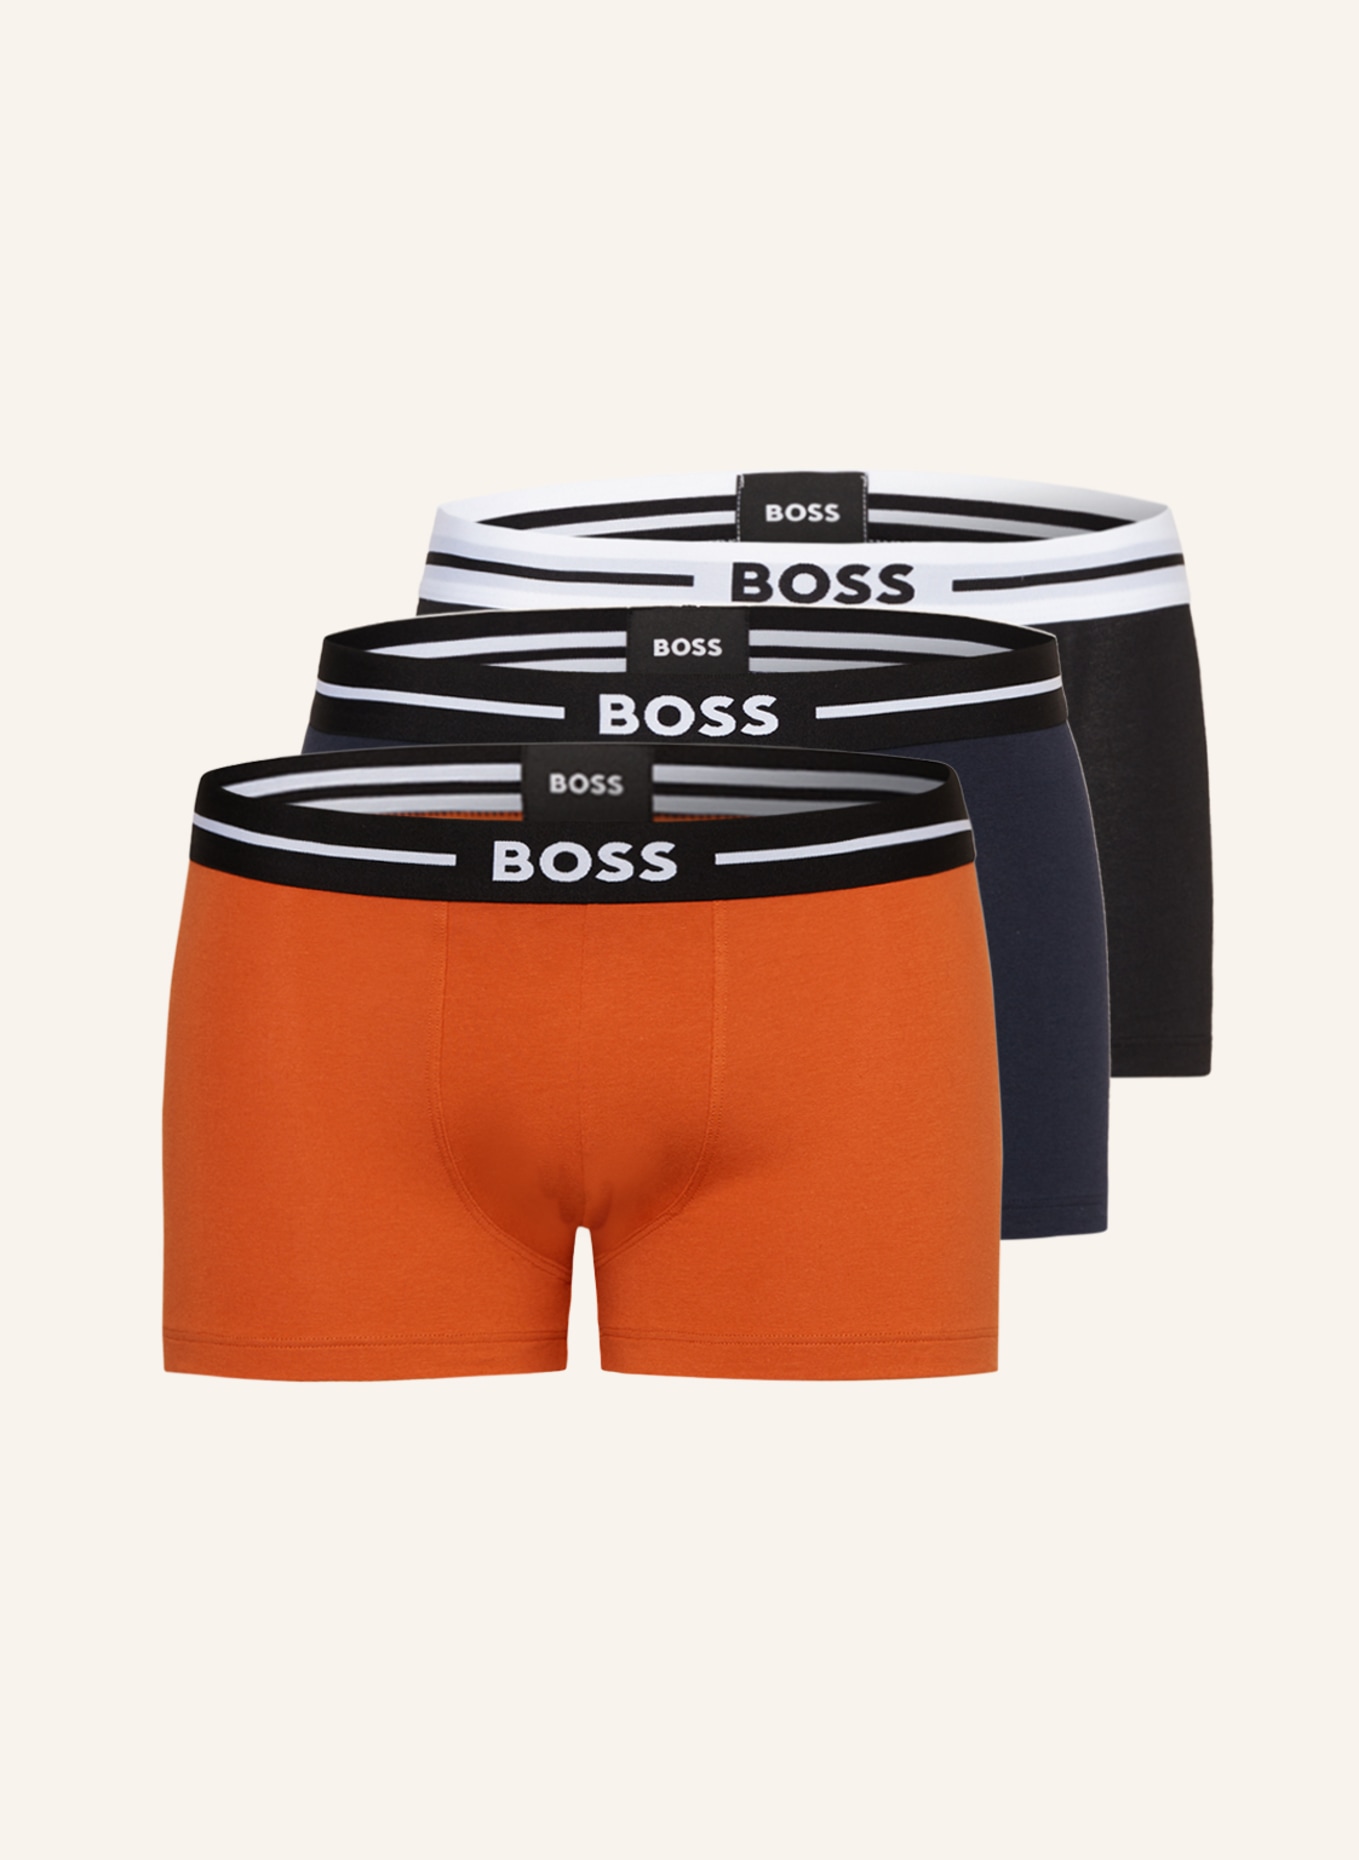 Bemærkelsesværdig overtro Igangværende BOSS 3-pack boxer shorts in orange/ black/ dark blue